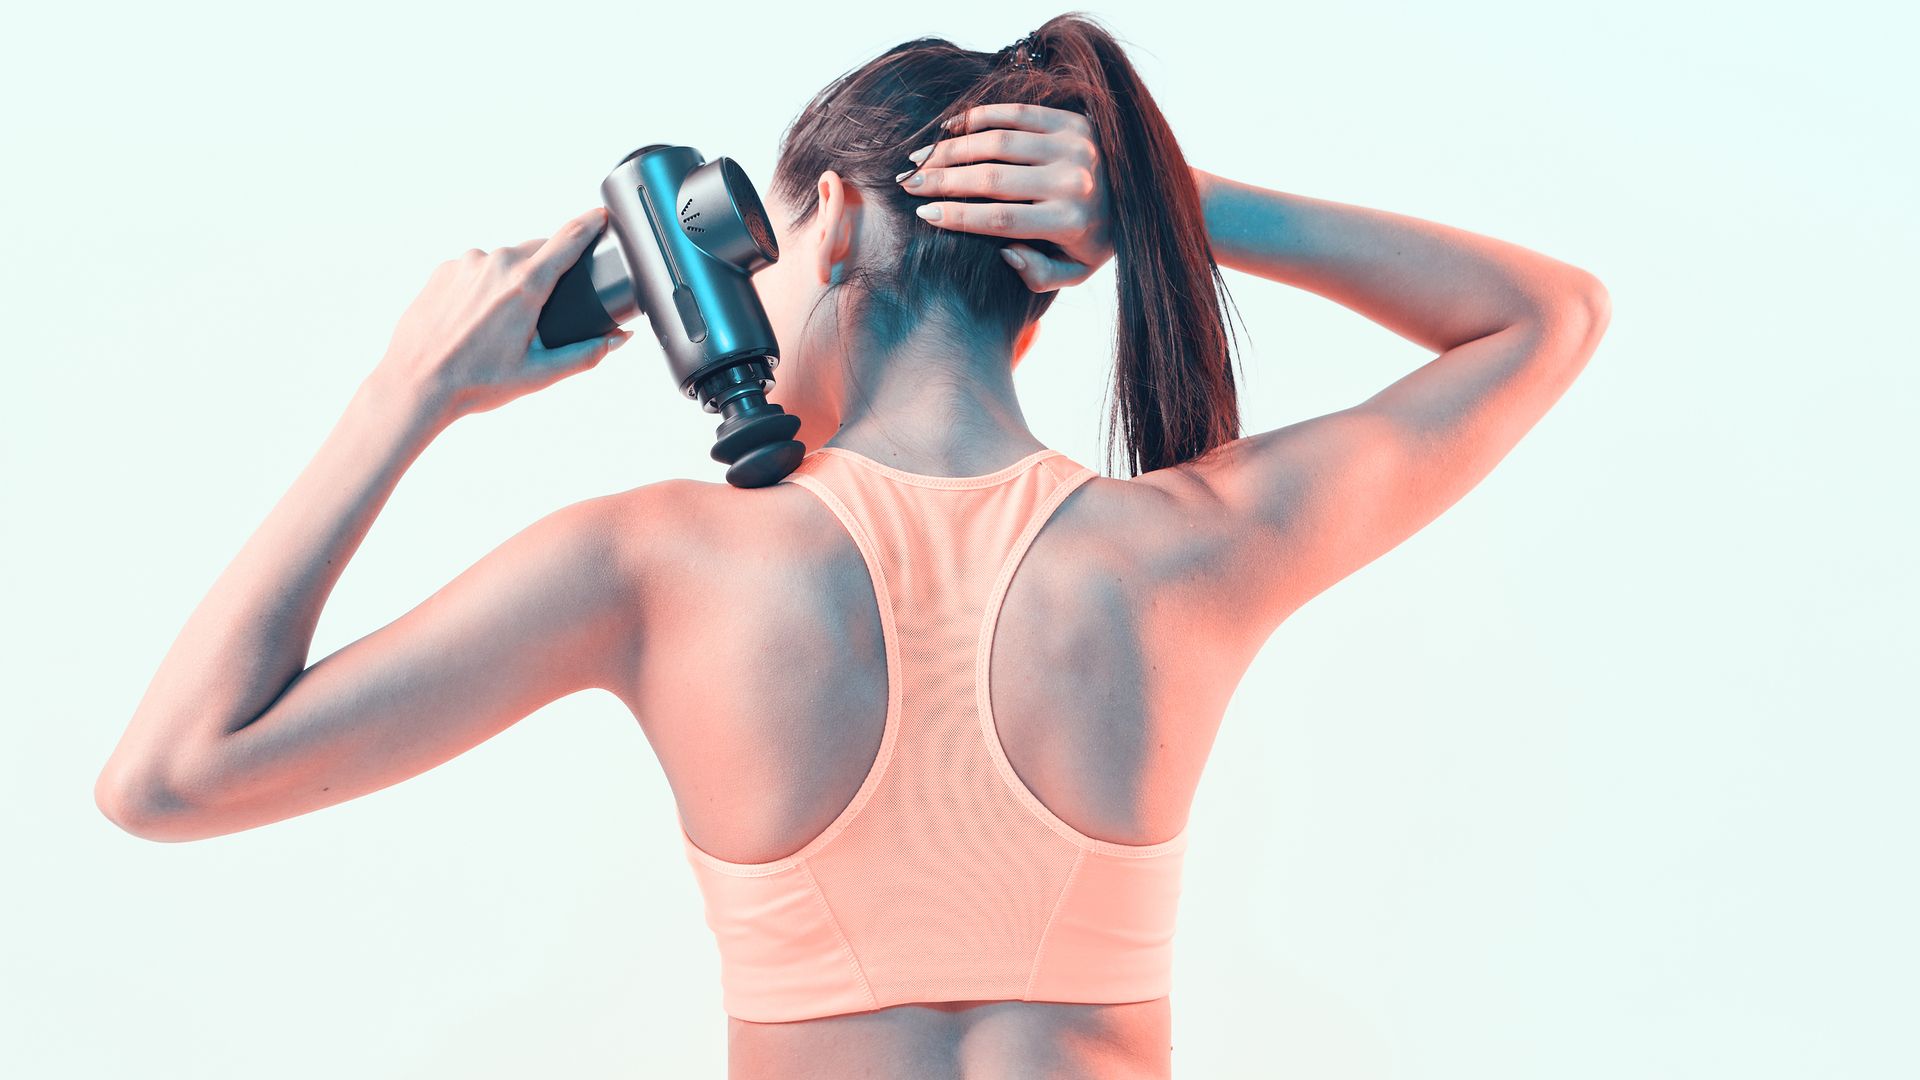 Woman using a massage gun on her shoulder.